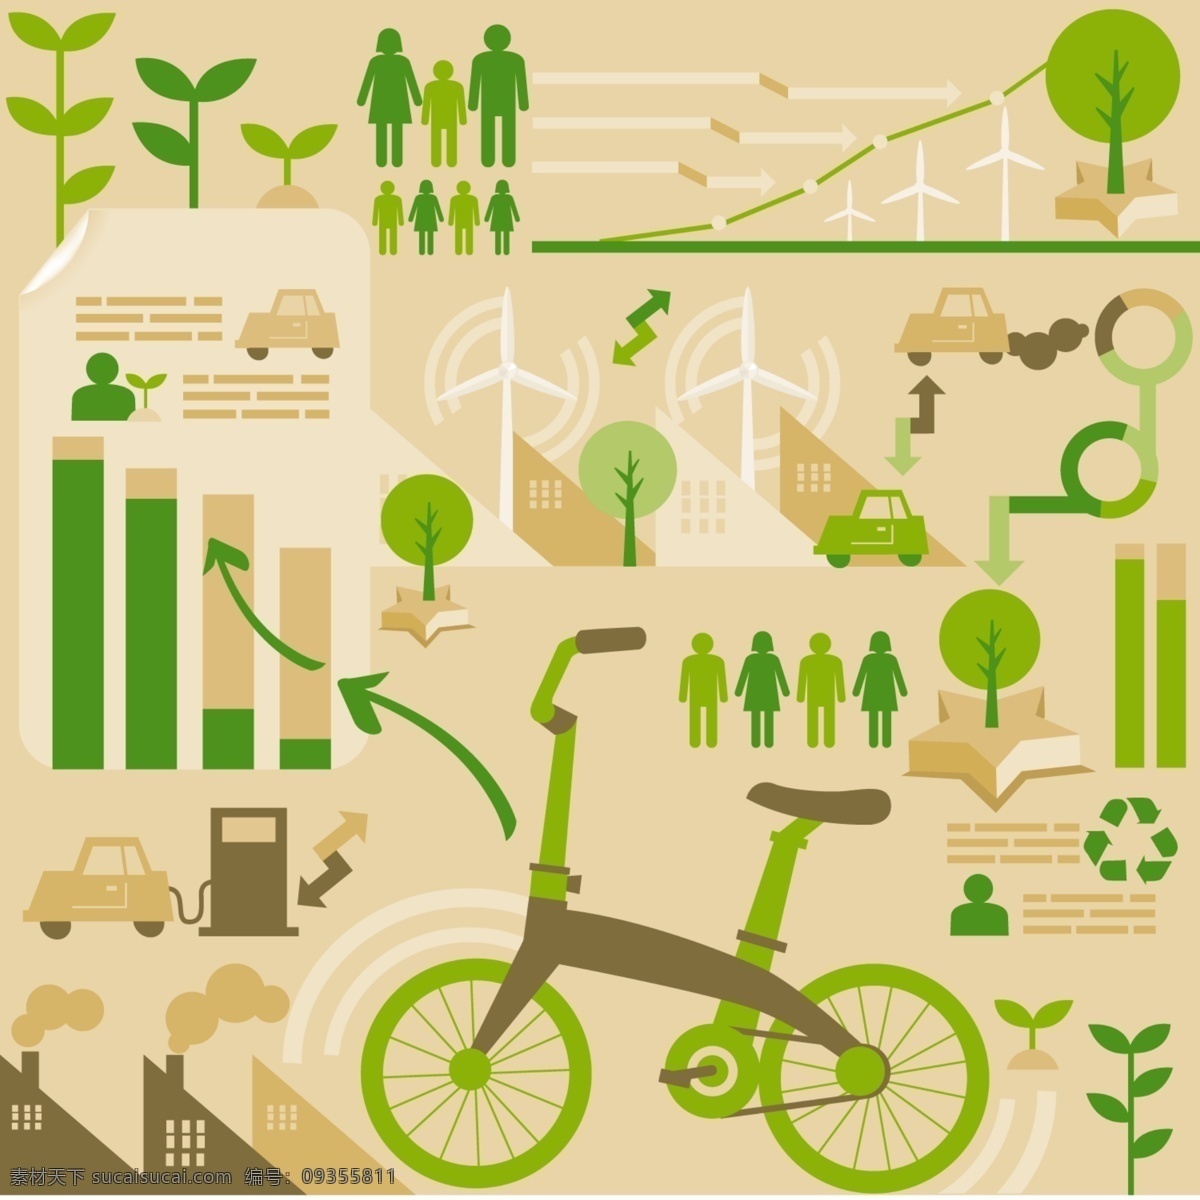 环保 主题 统计 图标 矢量图 风车 环保主题 绿色标志 绿叶 汽车 人物 树木 数据图 统计图标 自行车 其他矢量图